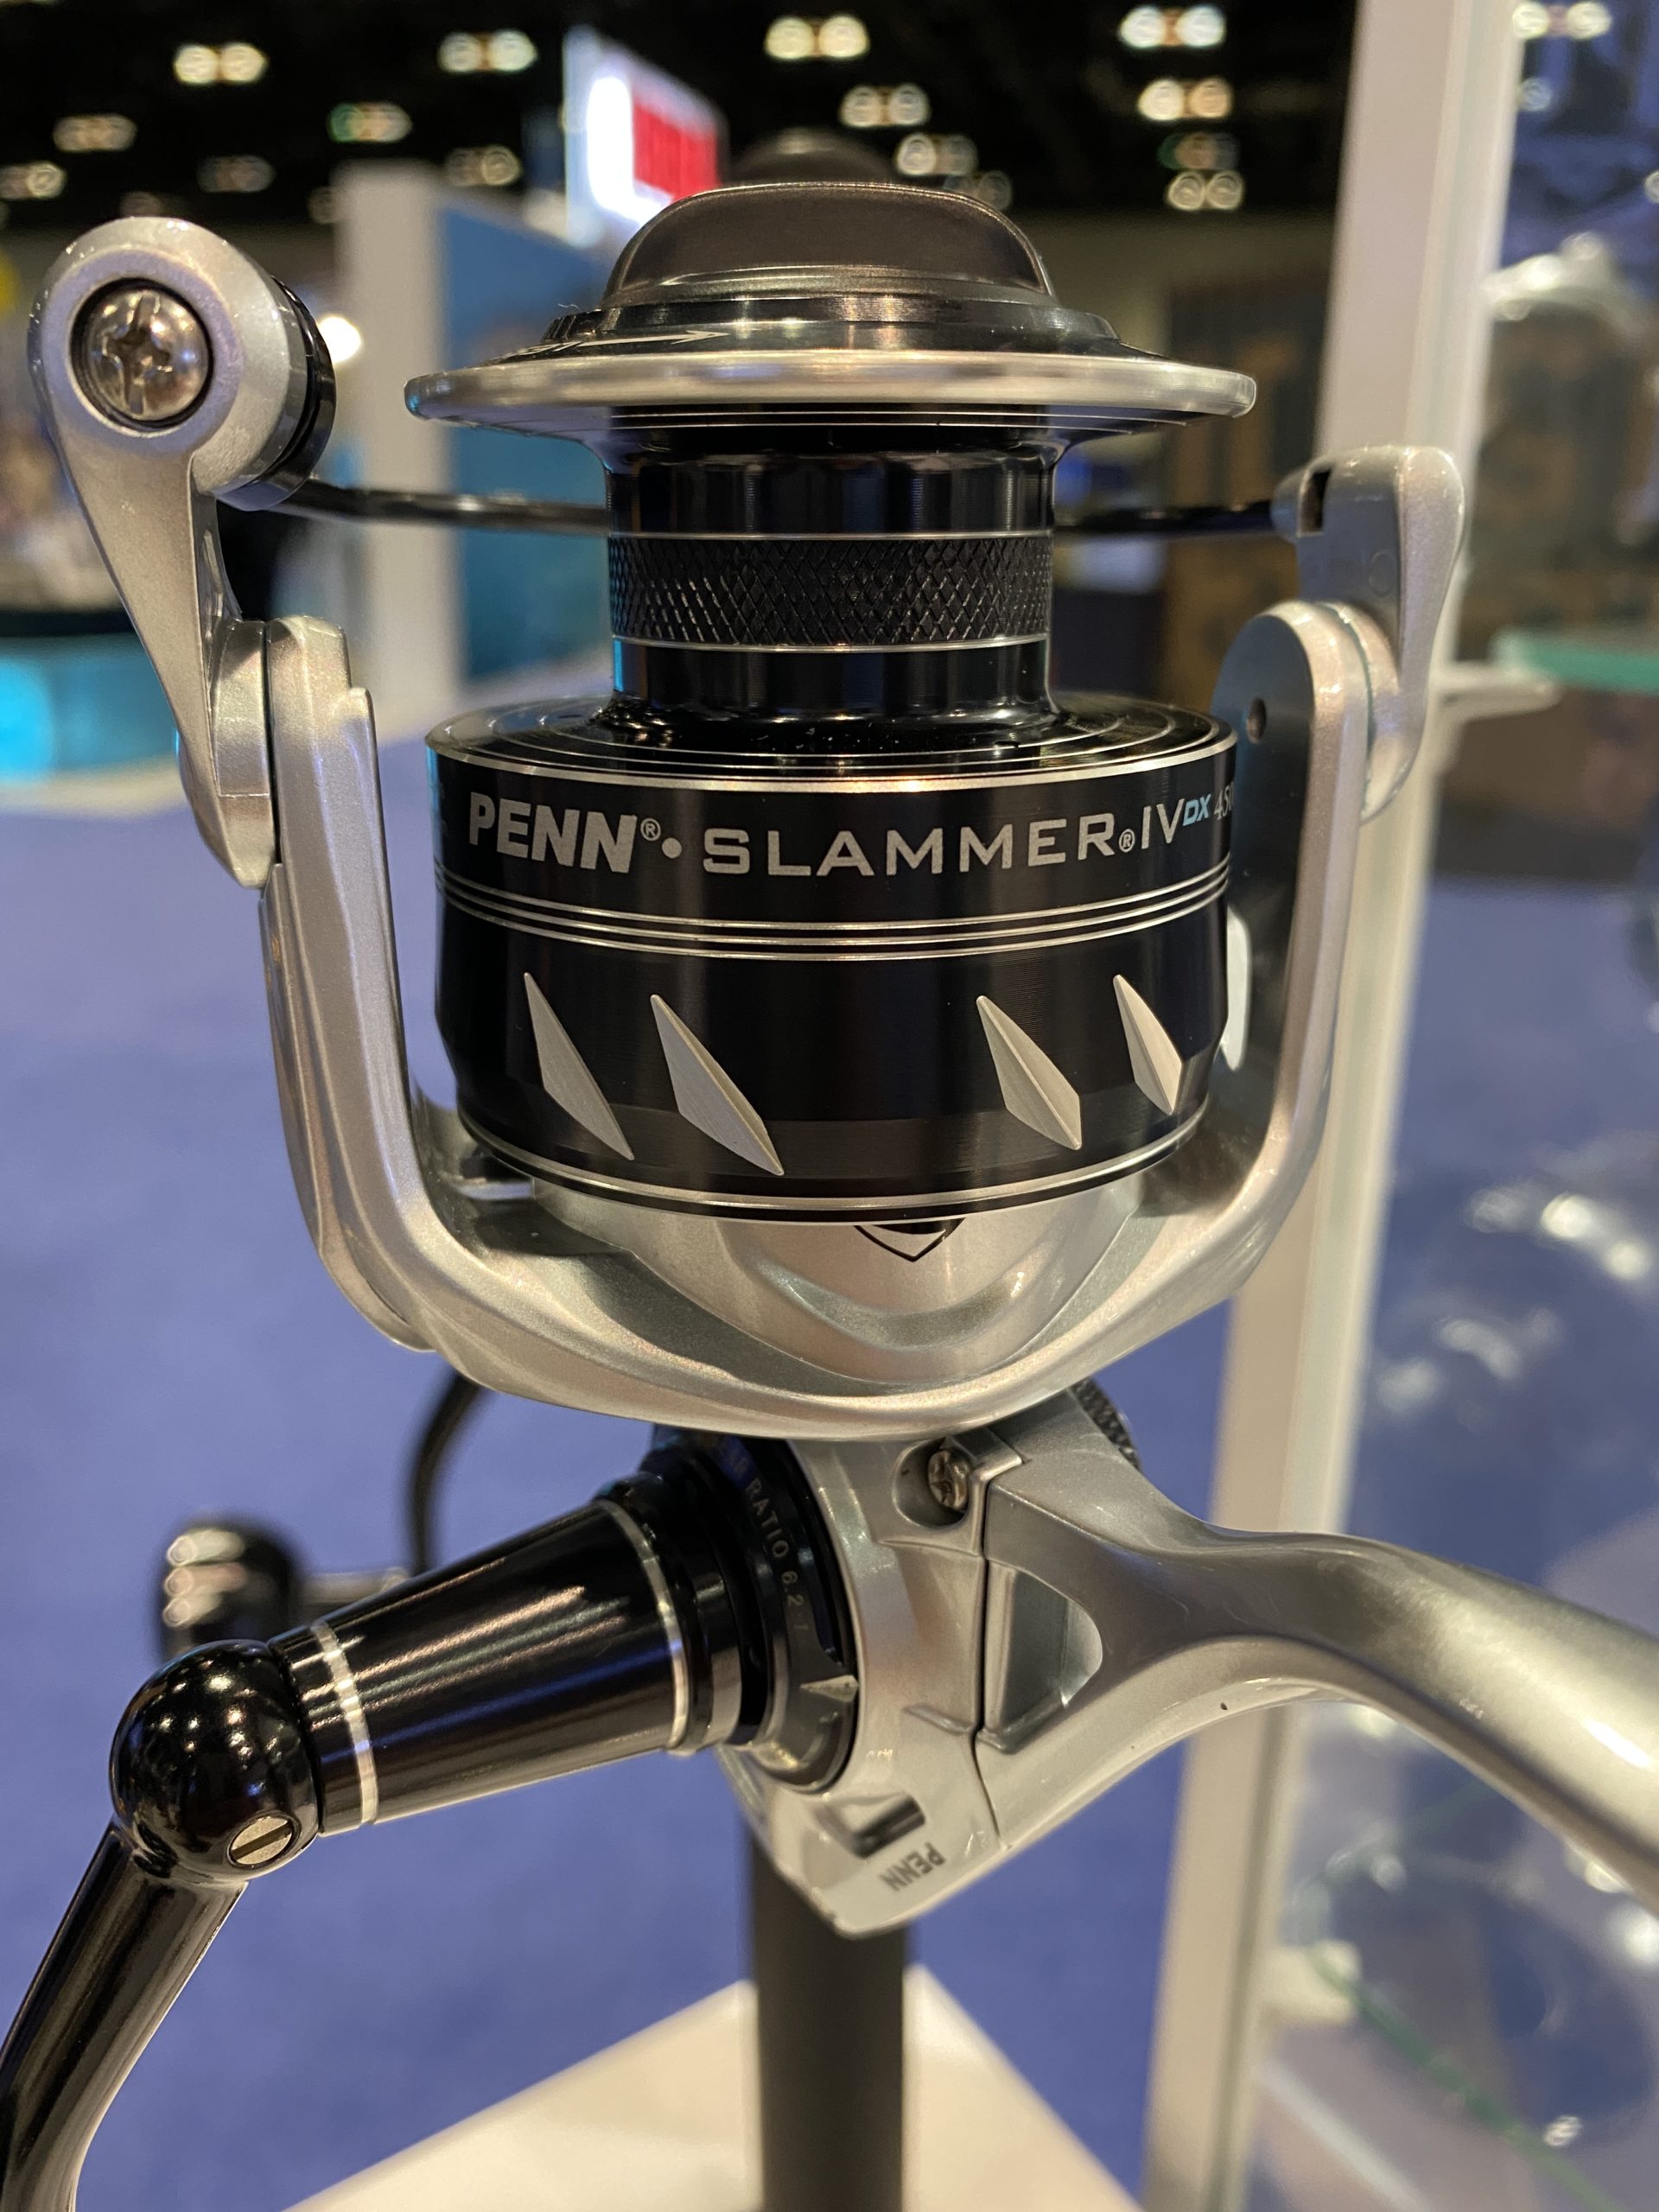 Penn Slammer IV DX Spinning Reels